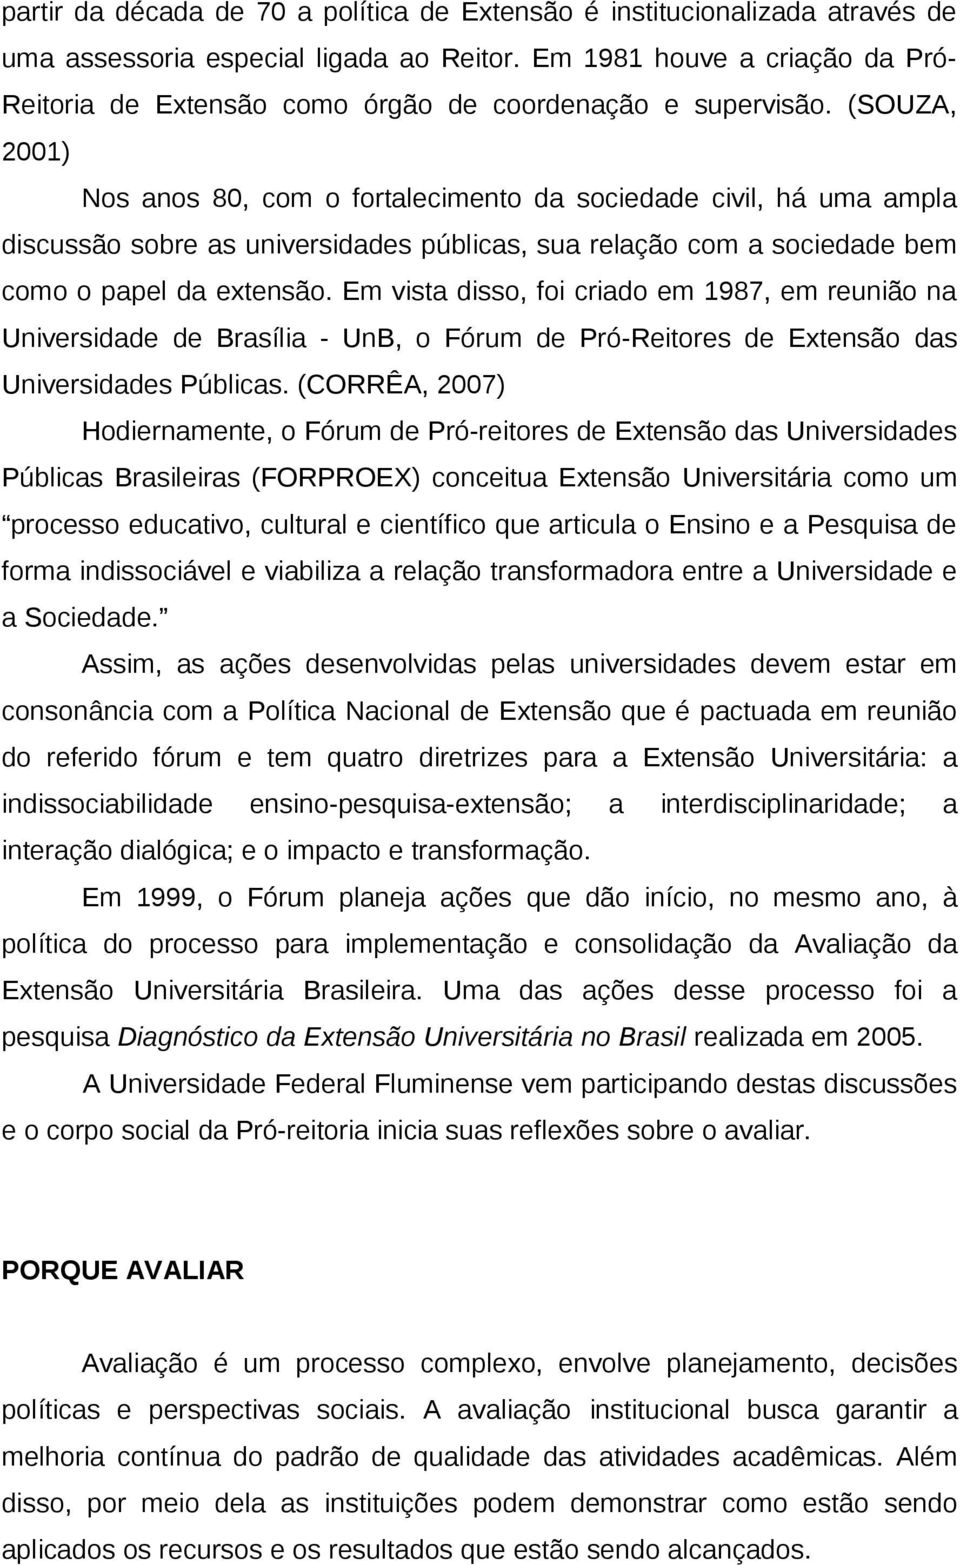 (SOUZA, 2001) Nos anos 80, com o fortalecimento da sociedade civil, há uma ampla discussão sobre as universidades públicas, sua relação com a sociedade bem como o papel da extensão.